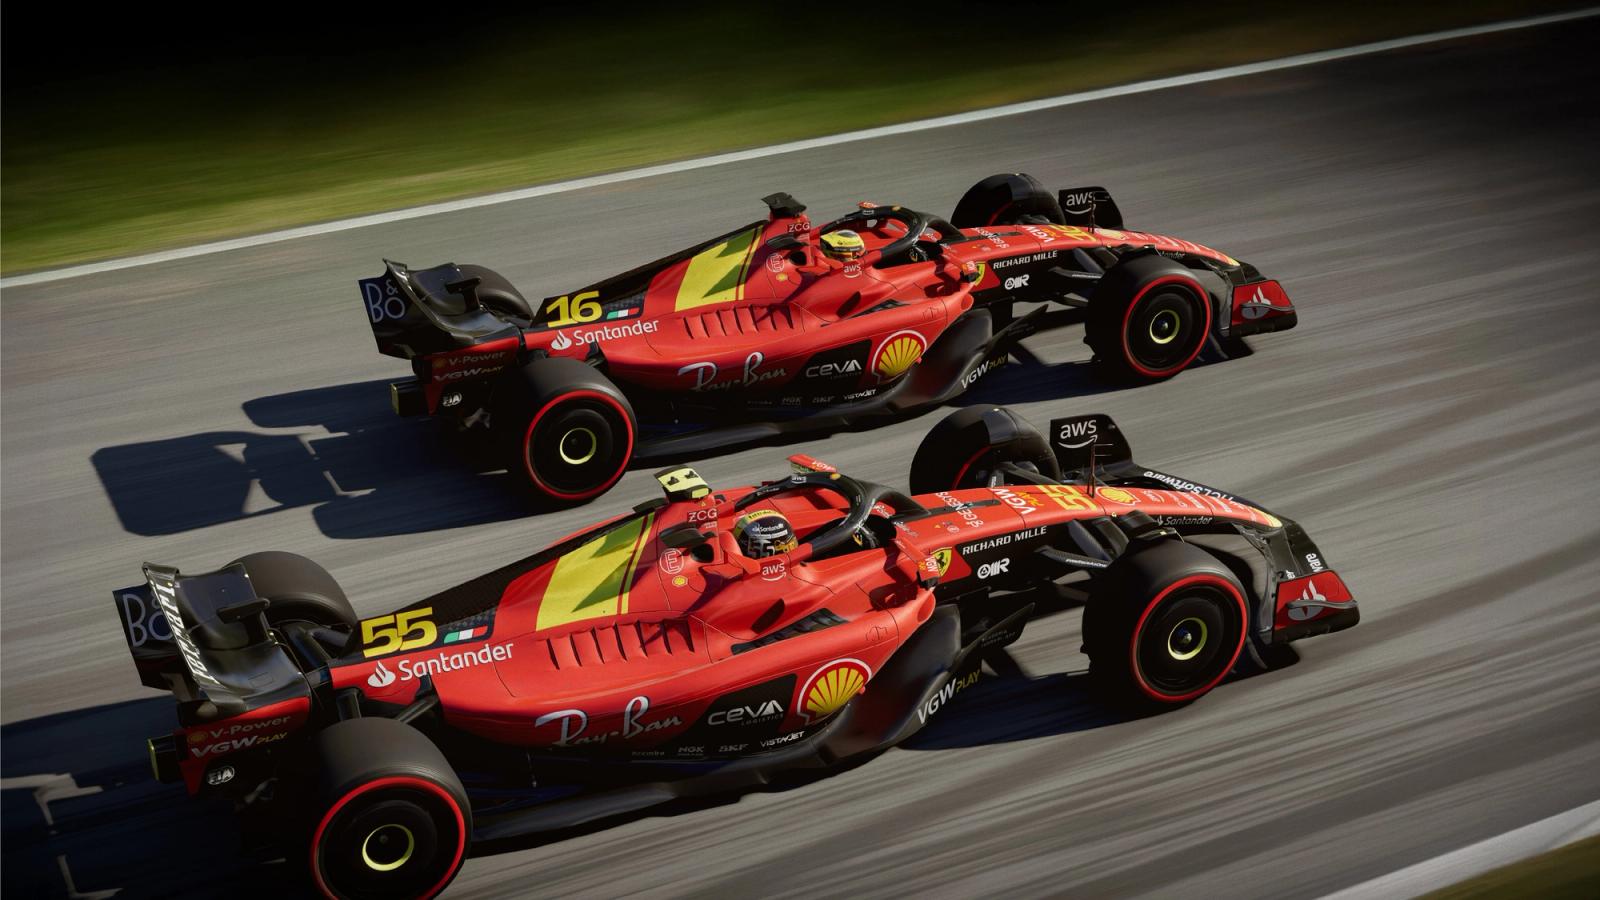 F1 23 Update 1.12 Reverts Ferrari Livery